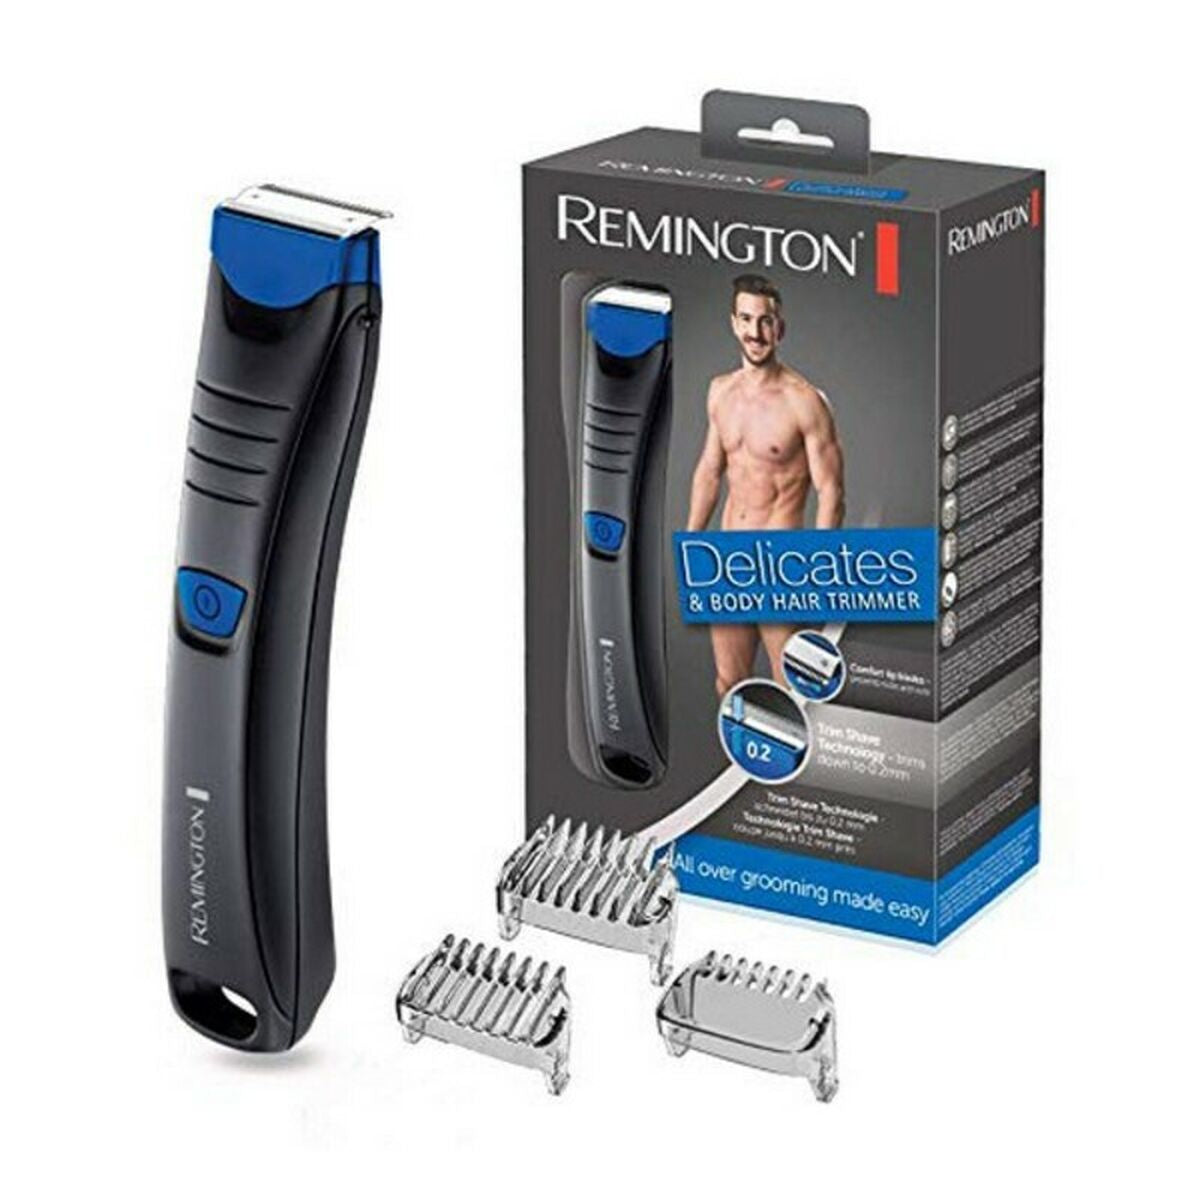 Kaufe Remington BHT250 Kabellose Haarschneidemaschine bei AWK Flagship um € 55.00